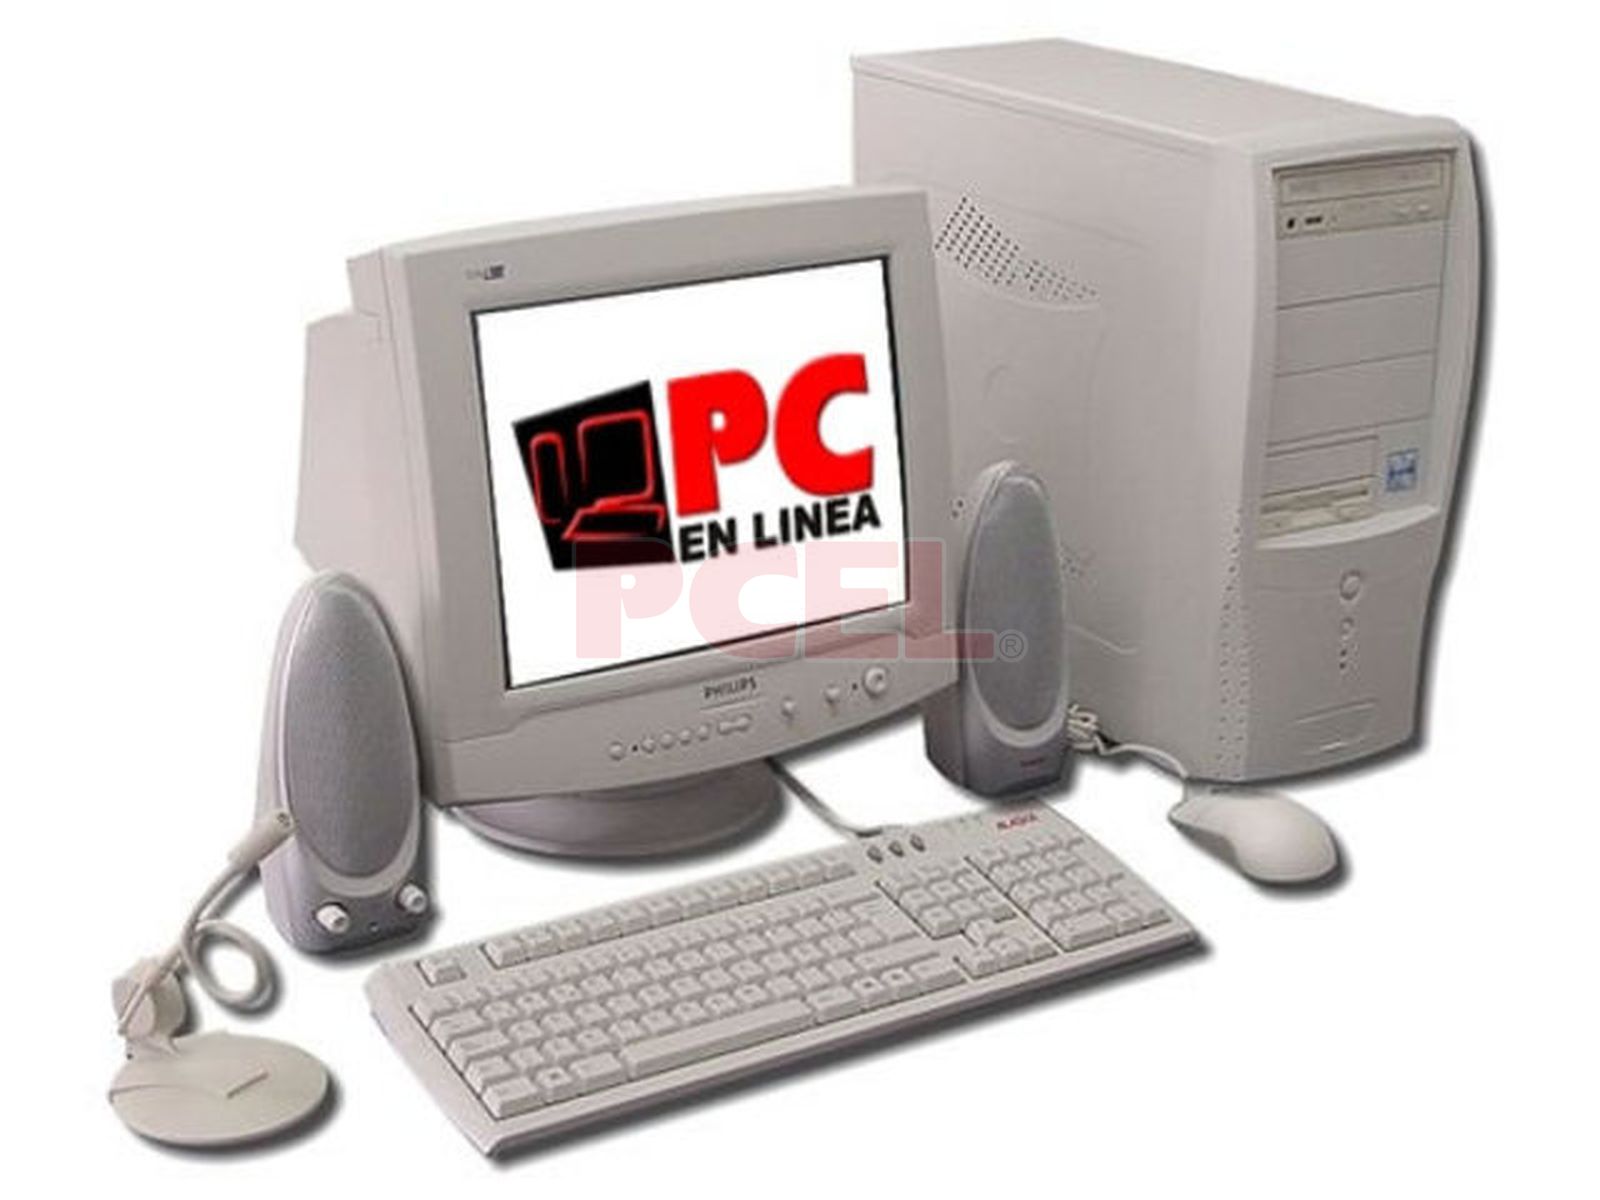 Computadora en Linea, Pentium 4 a 1.8Ghz 512Kb en Cache, Disco Duro de 40GB 7200RPM, 256Mb en Memoria RAM, Unidad CD-ROM AOpen de 52x, Integrado: Video, Sonido, Modem y